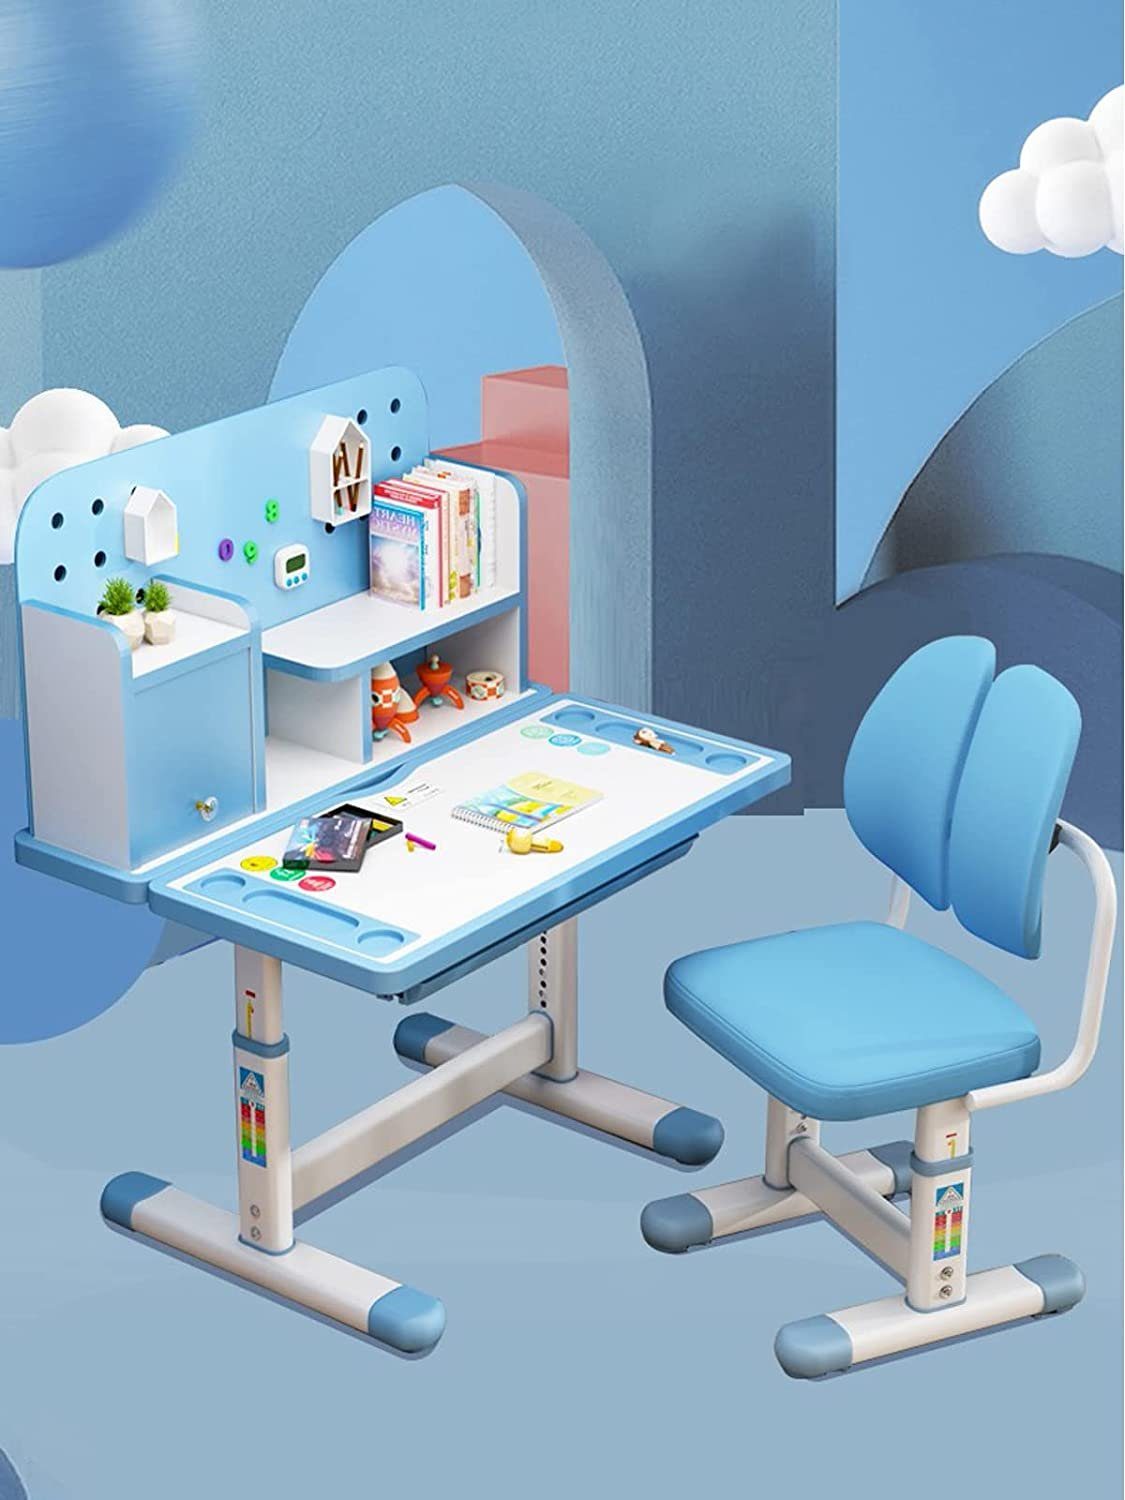 Stuhl style Kinderschreibtisch, Schülerschreibtisch höhenverstellbar mit home (Blau)